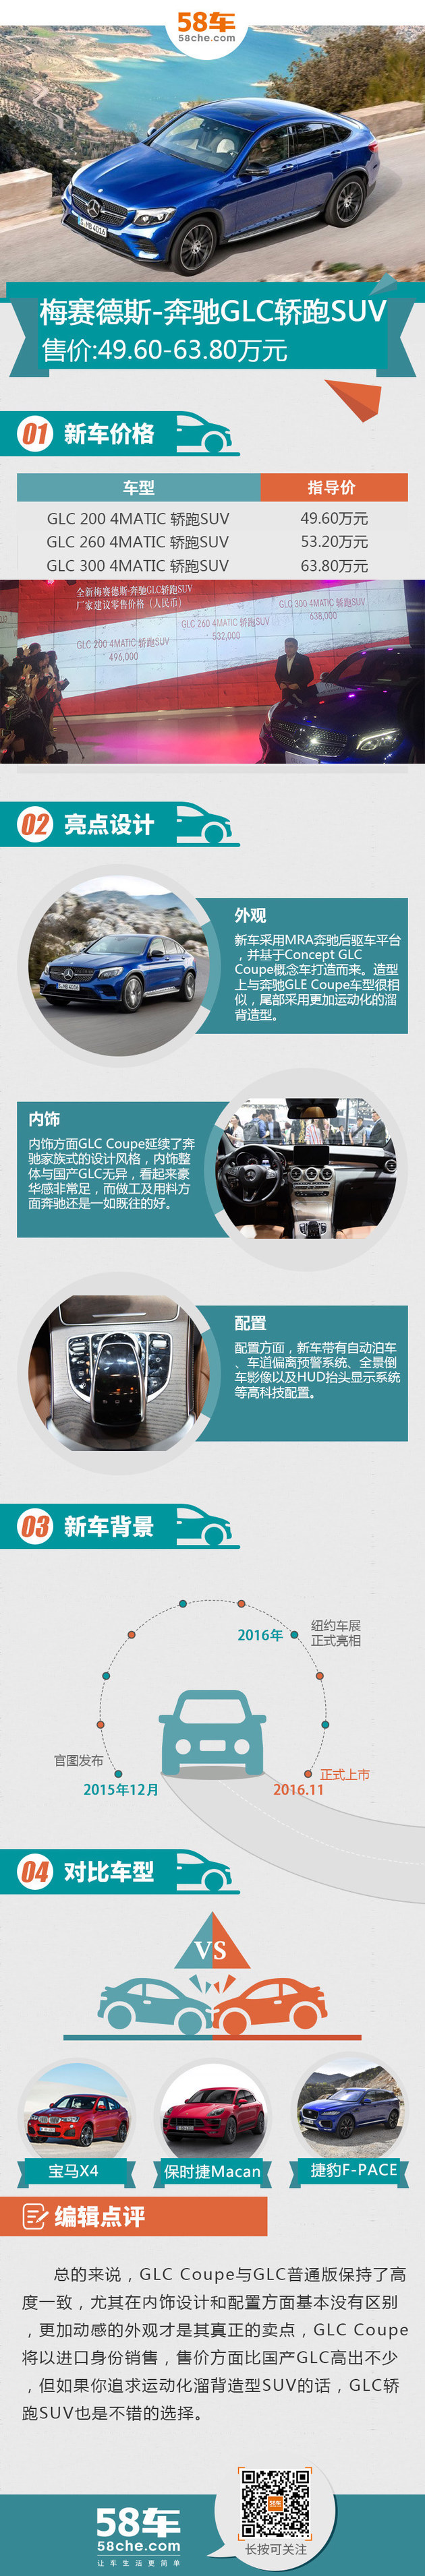 奔驰GLC轿跑SUV上市 售价49.6-63.8万元